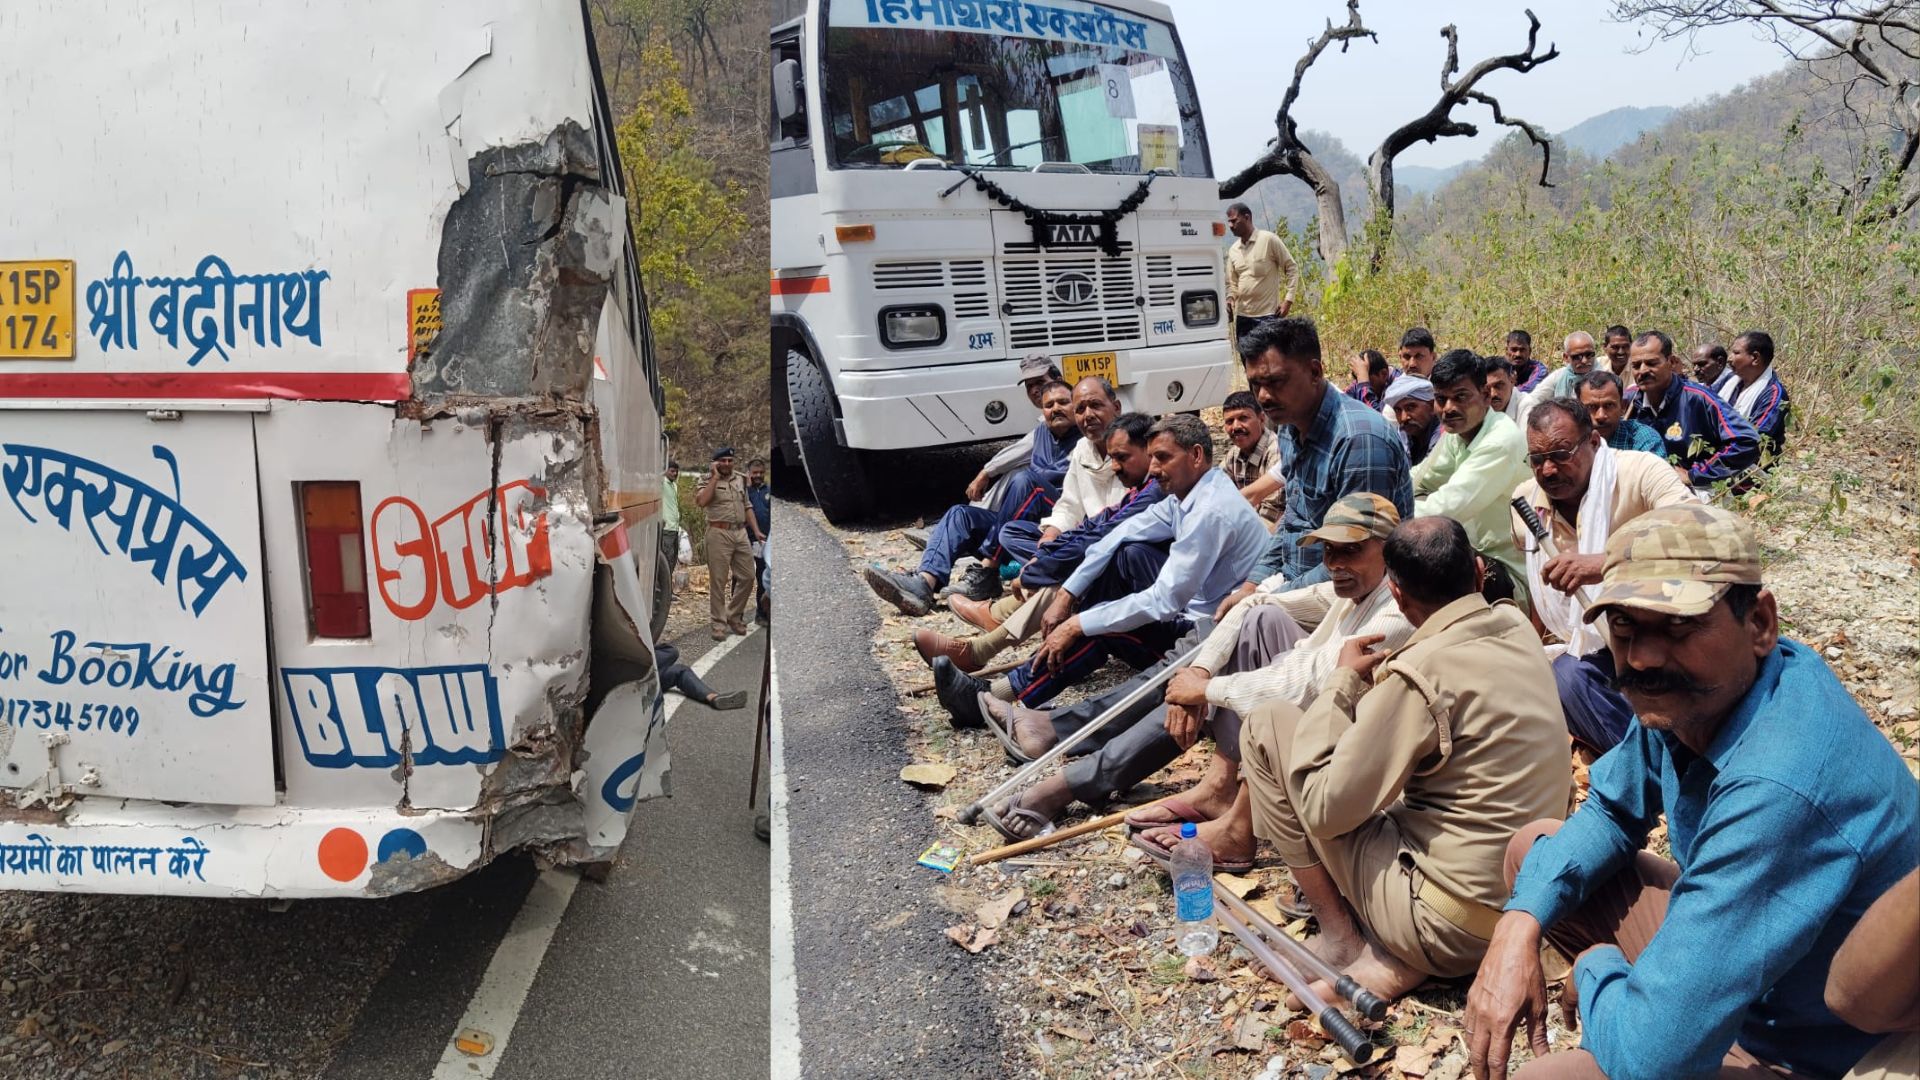 शाहजहांपुर: चुनाव ड्यूटी का सफर उत्तराखंड में हुआ खतरनाक, चालक की सूझबूझ से बची खुटार के 37 होमगार्डों की जान